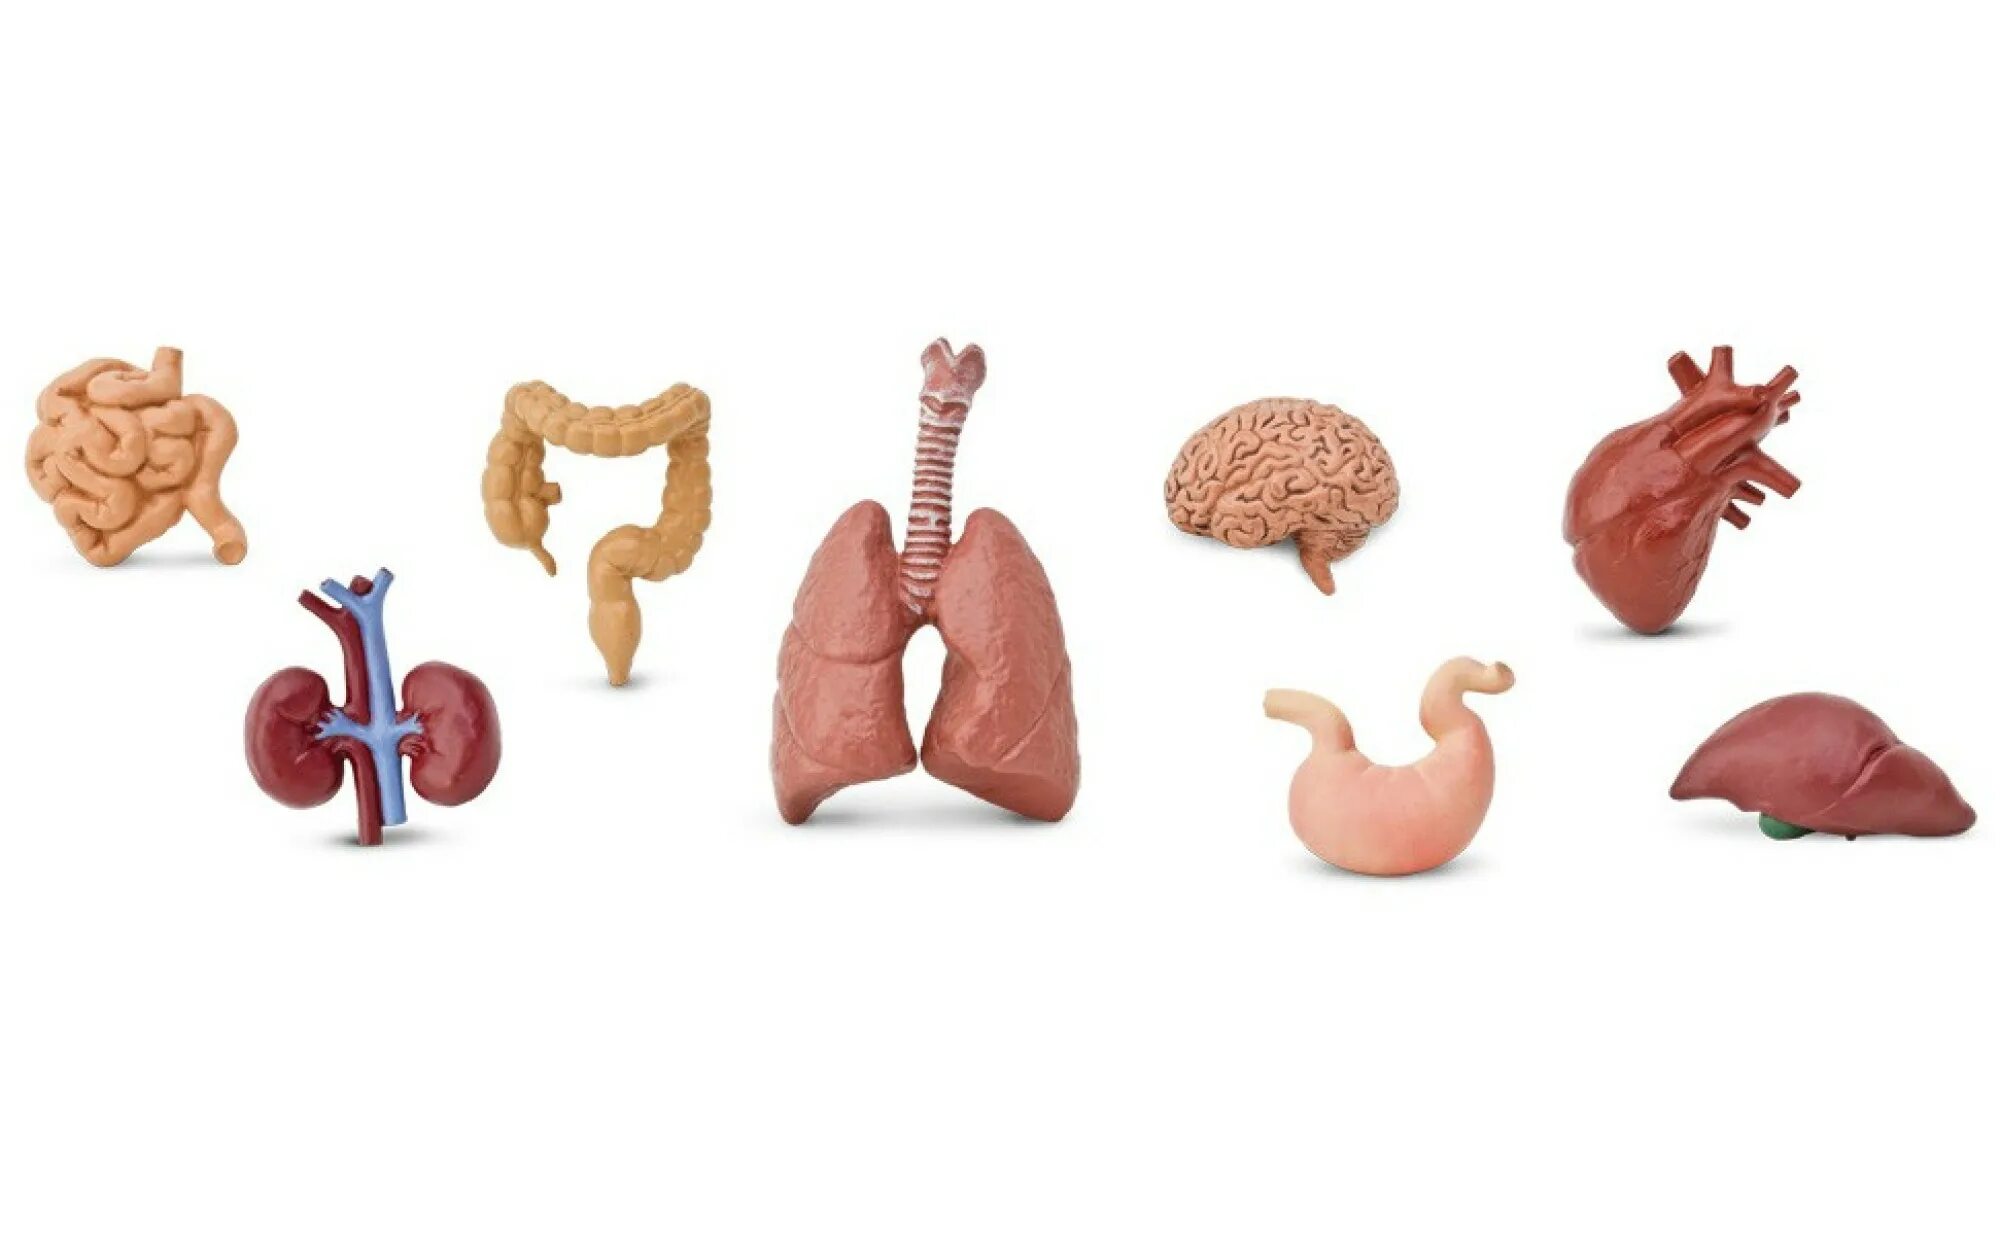 Модель органов человека. Органы человека по отдельности. Фигурка человека с органами. Внутренние органы человека из пластилина. Модель органов человека и пластилина.